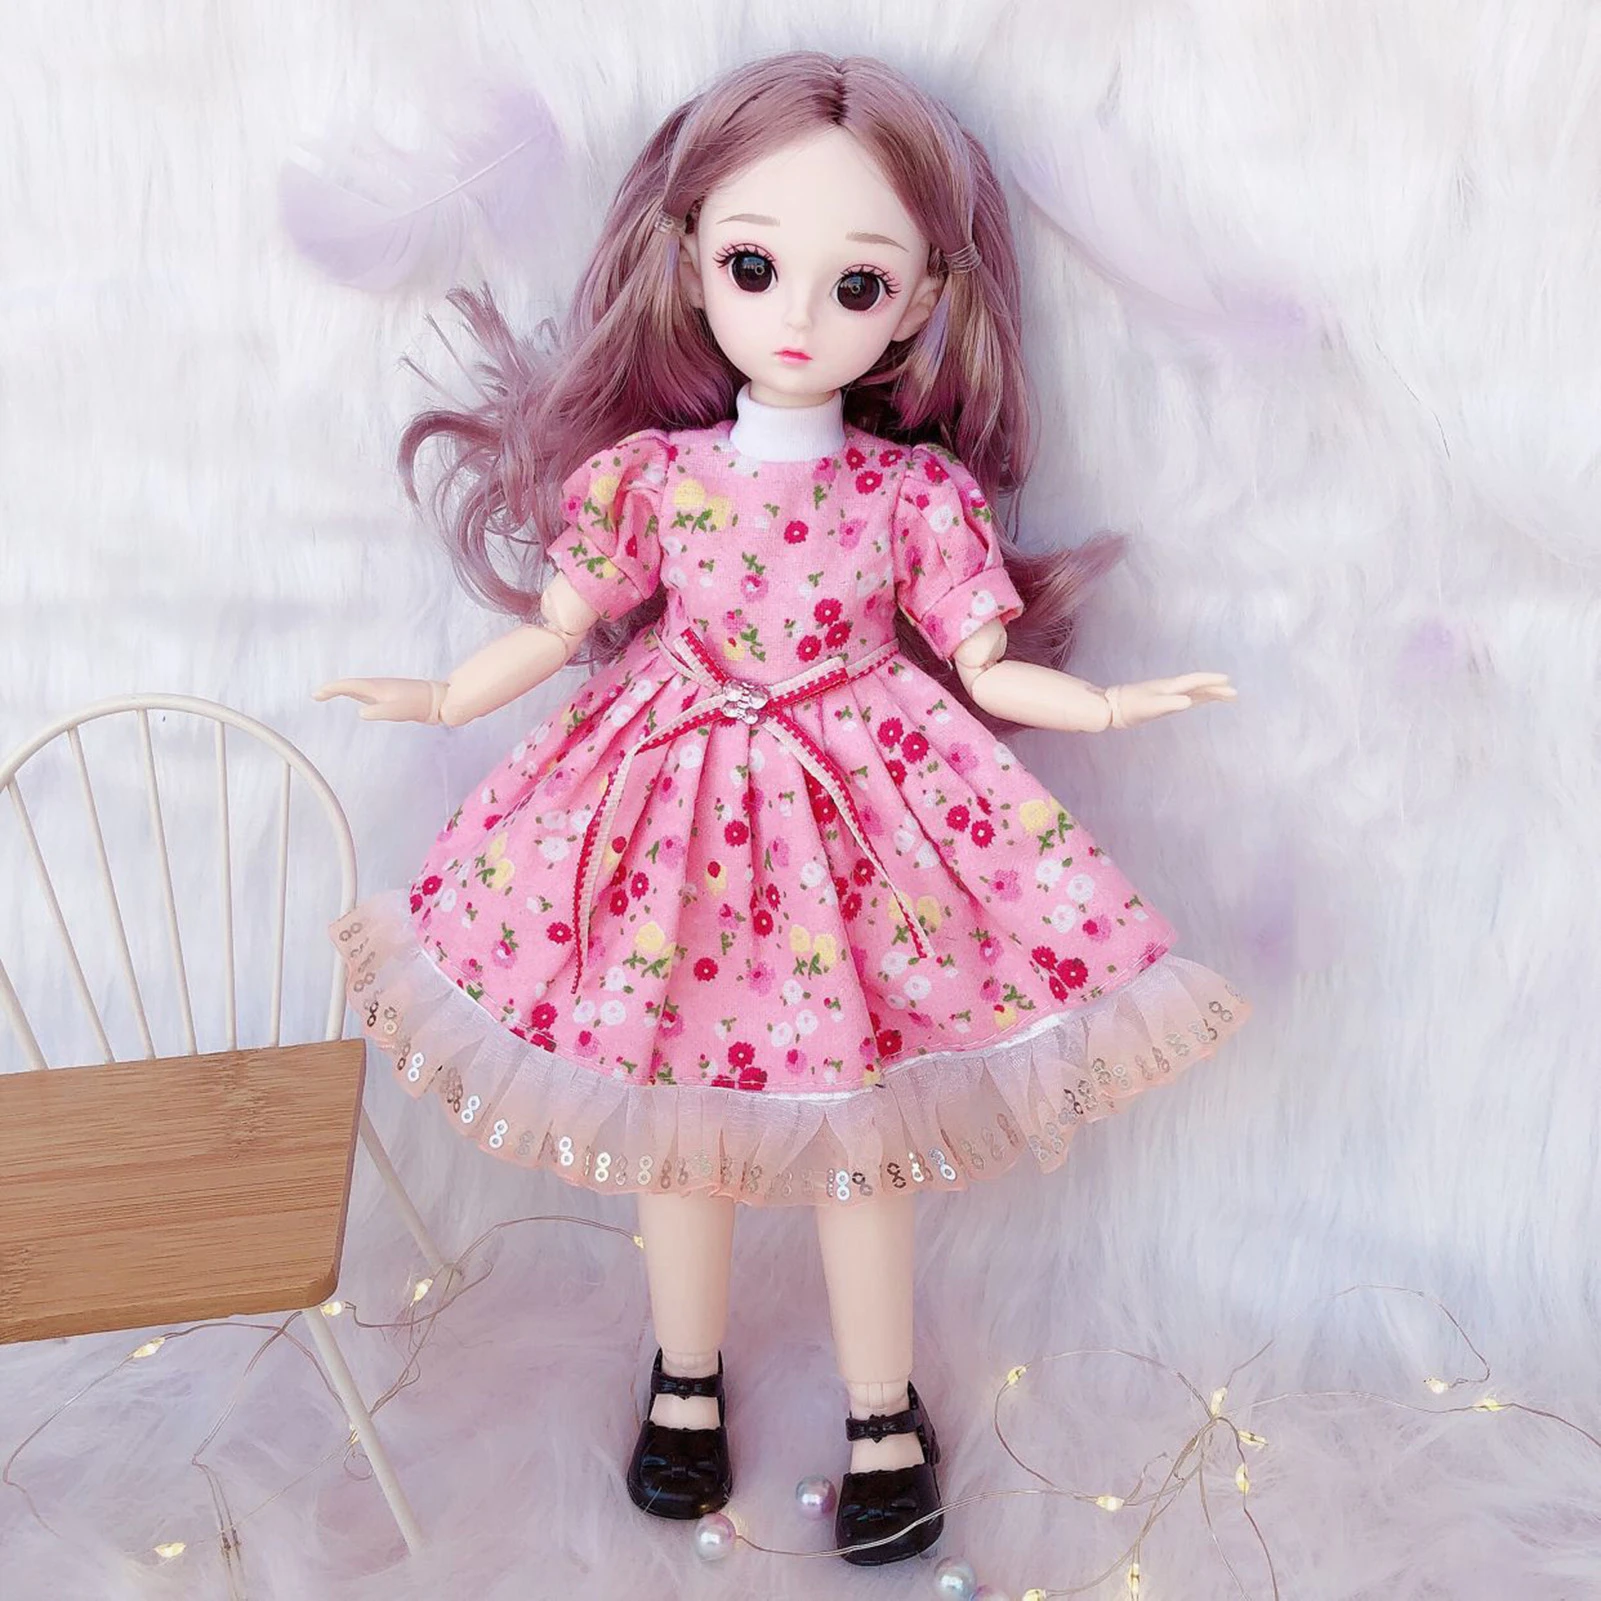 22 articulaciones movibles BJD Doll 12 pulgadas 30cm 1/6 maquillaje vestir  muñecas lindas con vestido de moda juguetes de belleza para niñas regalos  de navidad|BJD Muñecas| - AliExpress